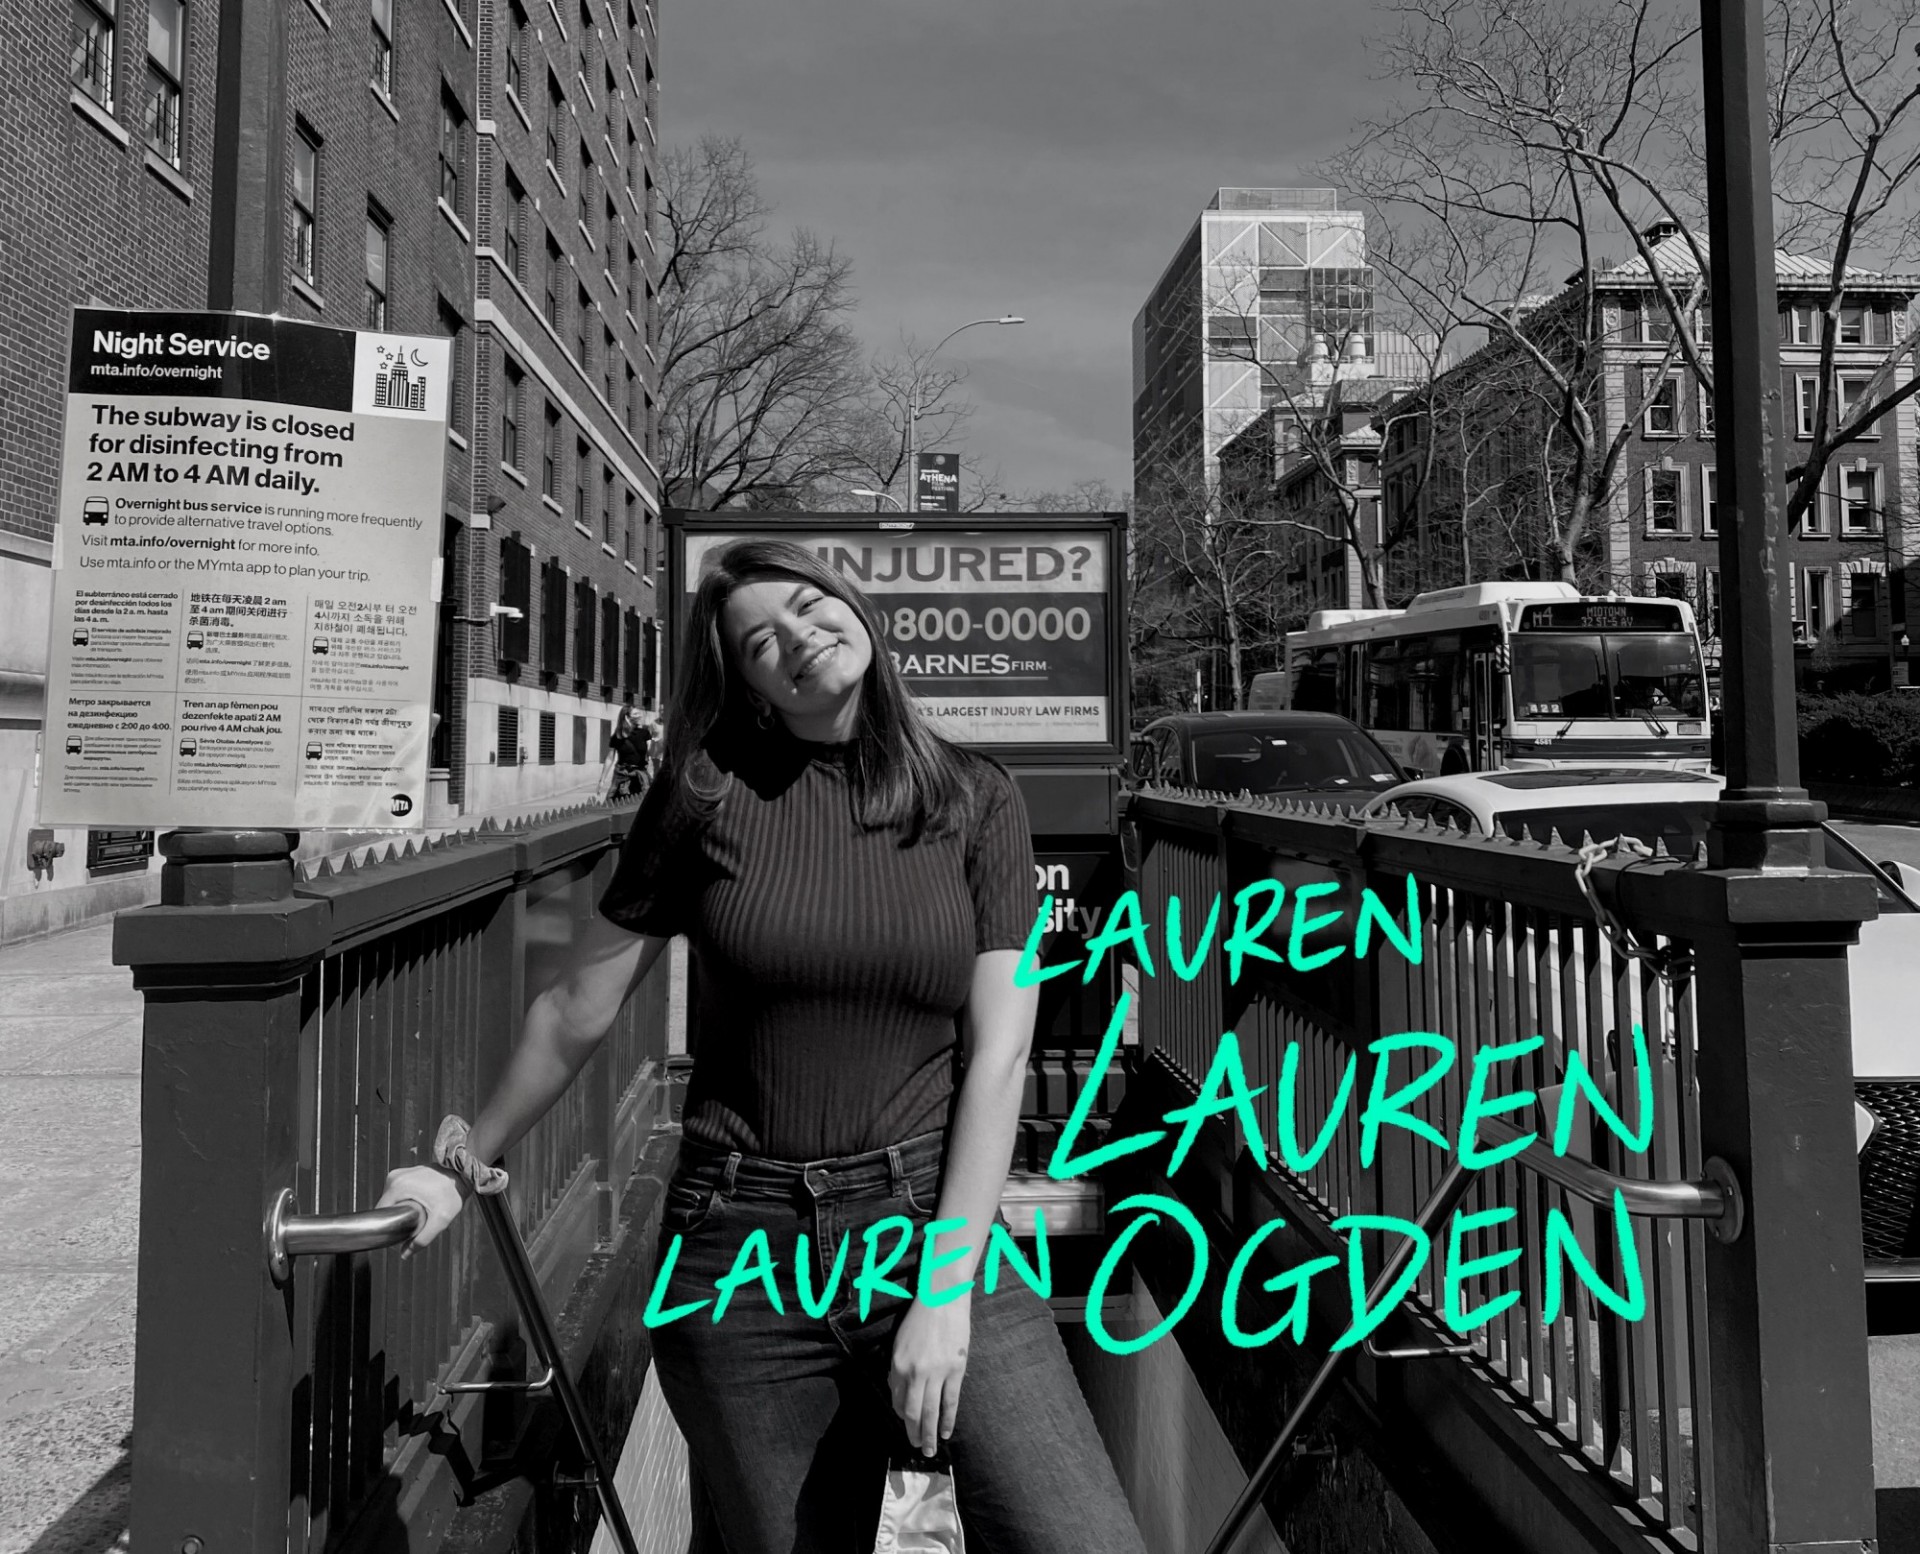 Lauren Ogden